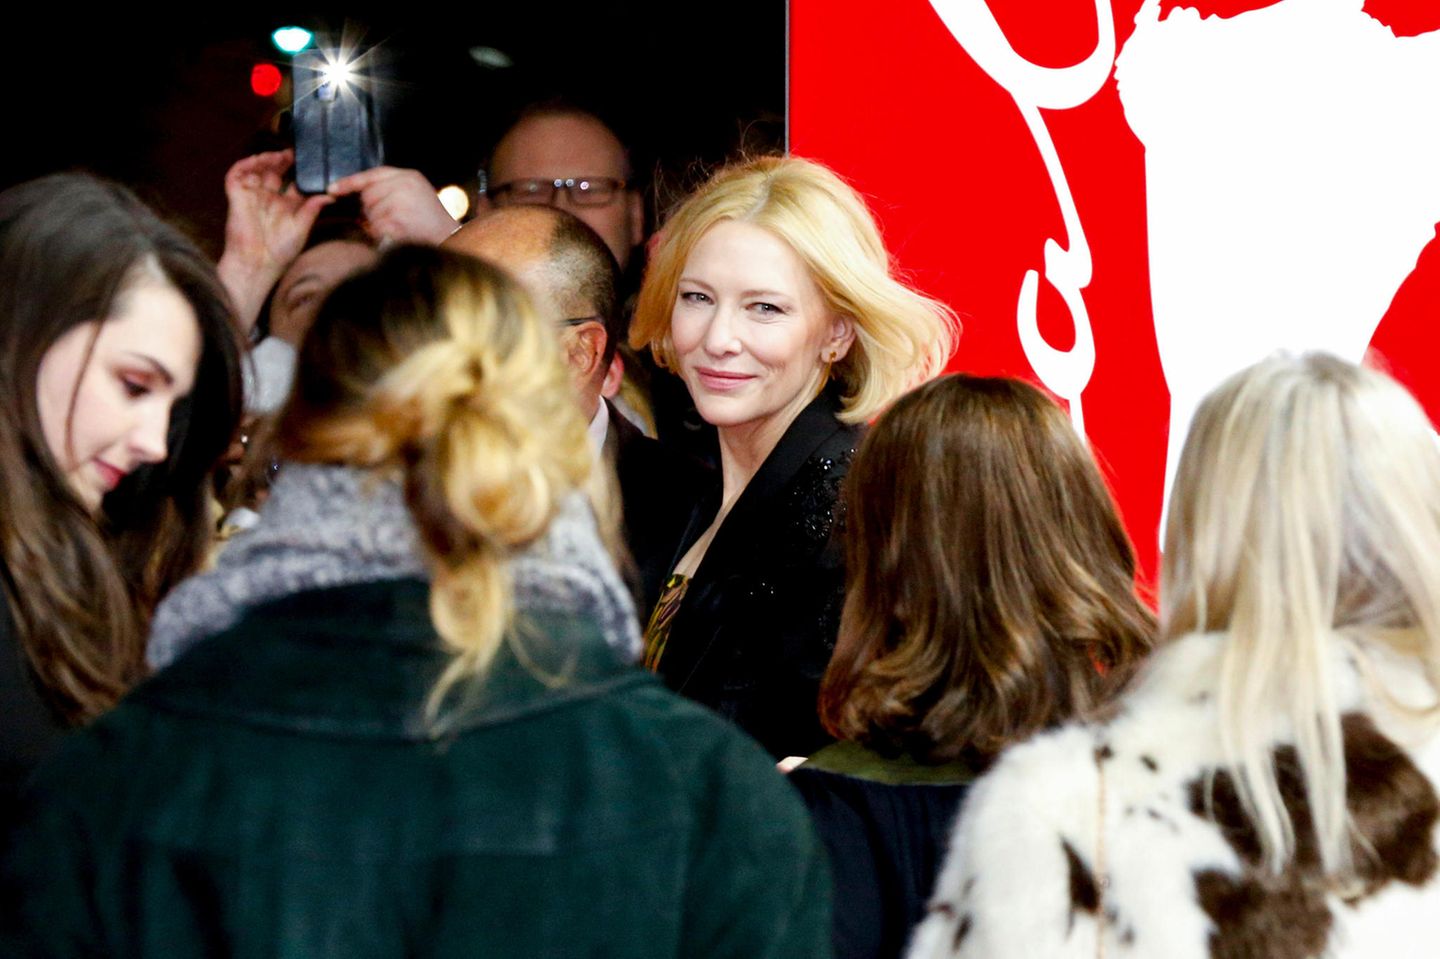 Auch in einer Menschenmenge kaum zu übersehen: Cate Blanchett bezaubert bei der Premiere von "Stateless".